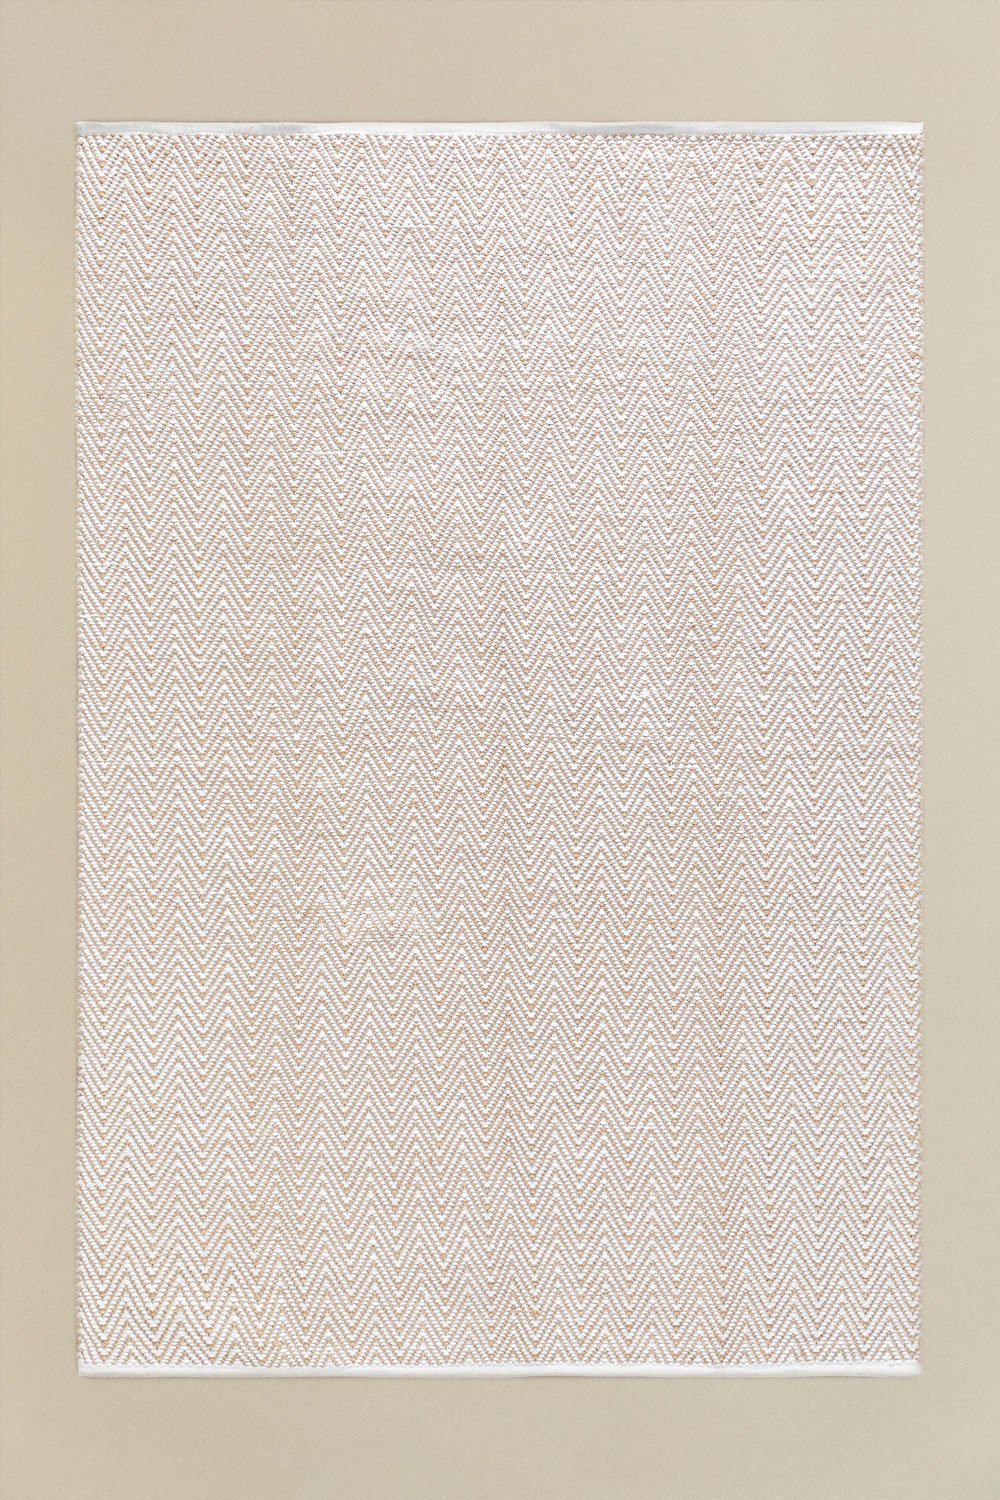 Dywan z juty zewnętrzny (240x160 cm) Romain, obrazek w galerii 1